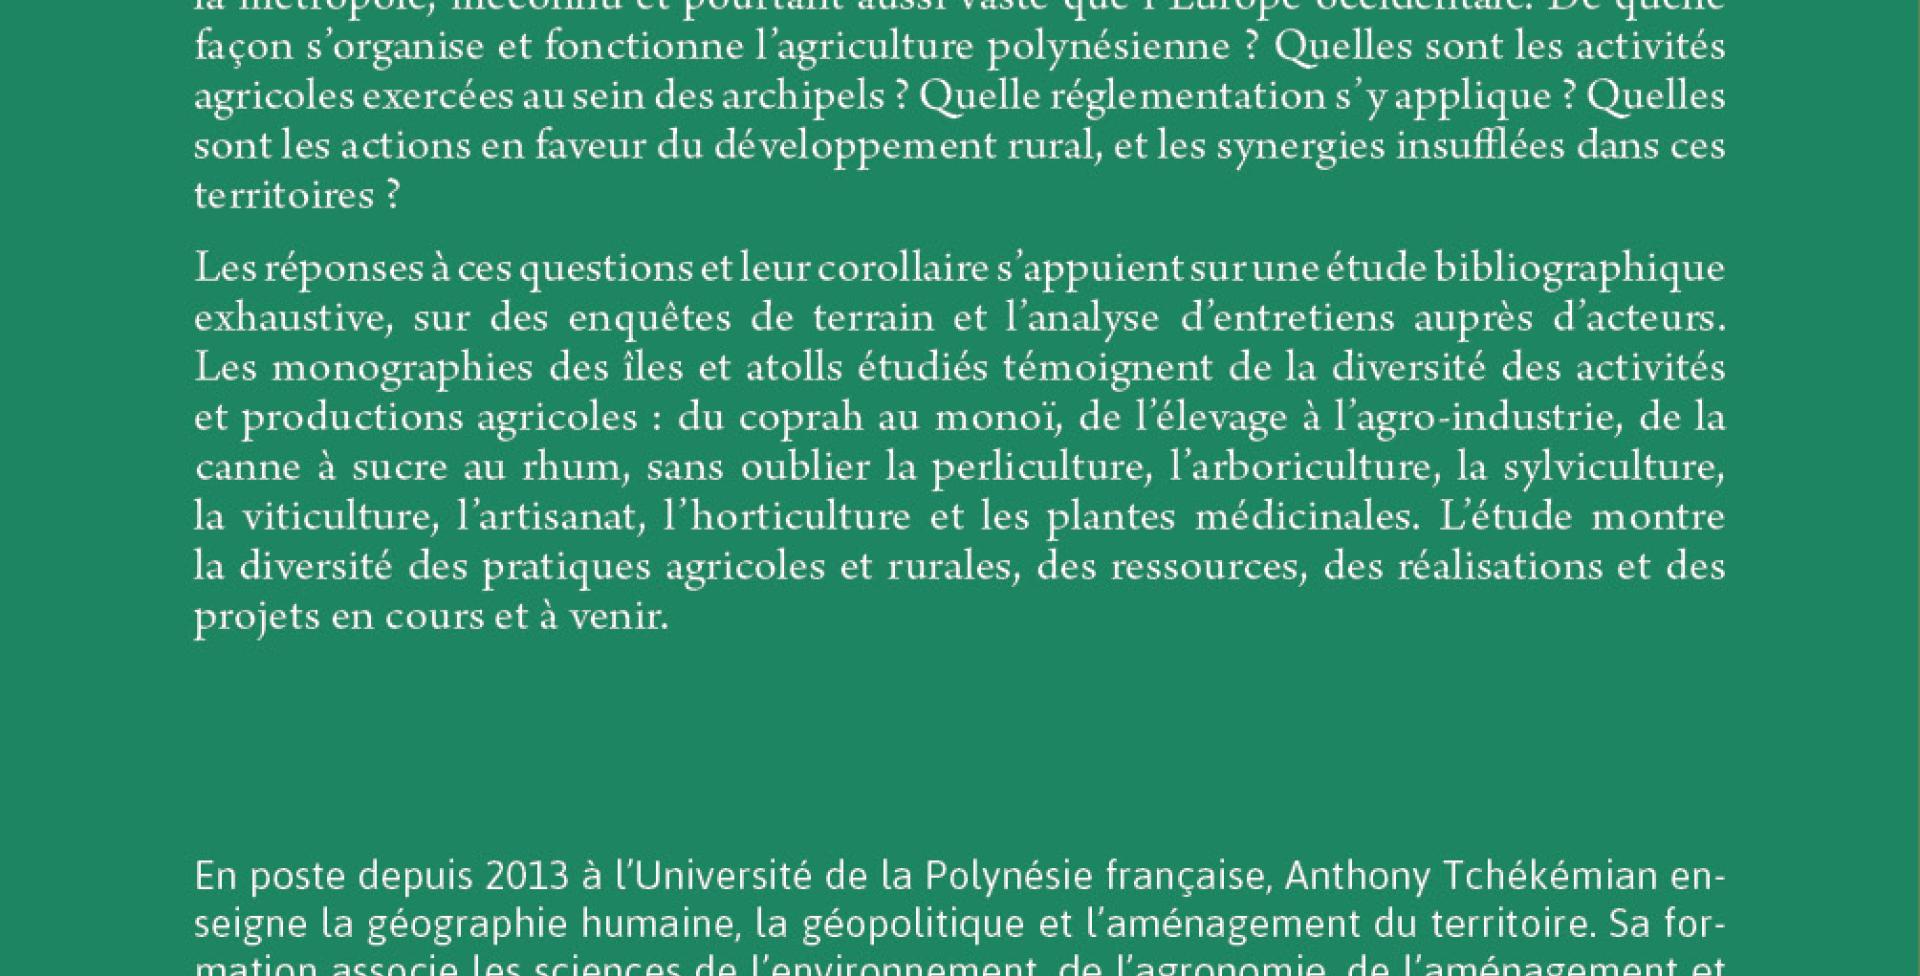 L'agriculture en Polynésie française